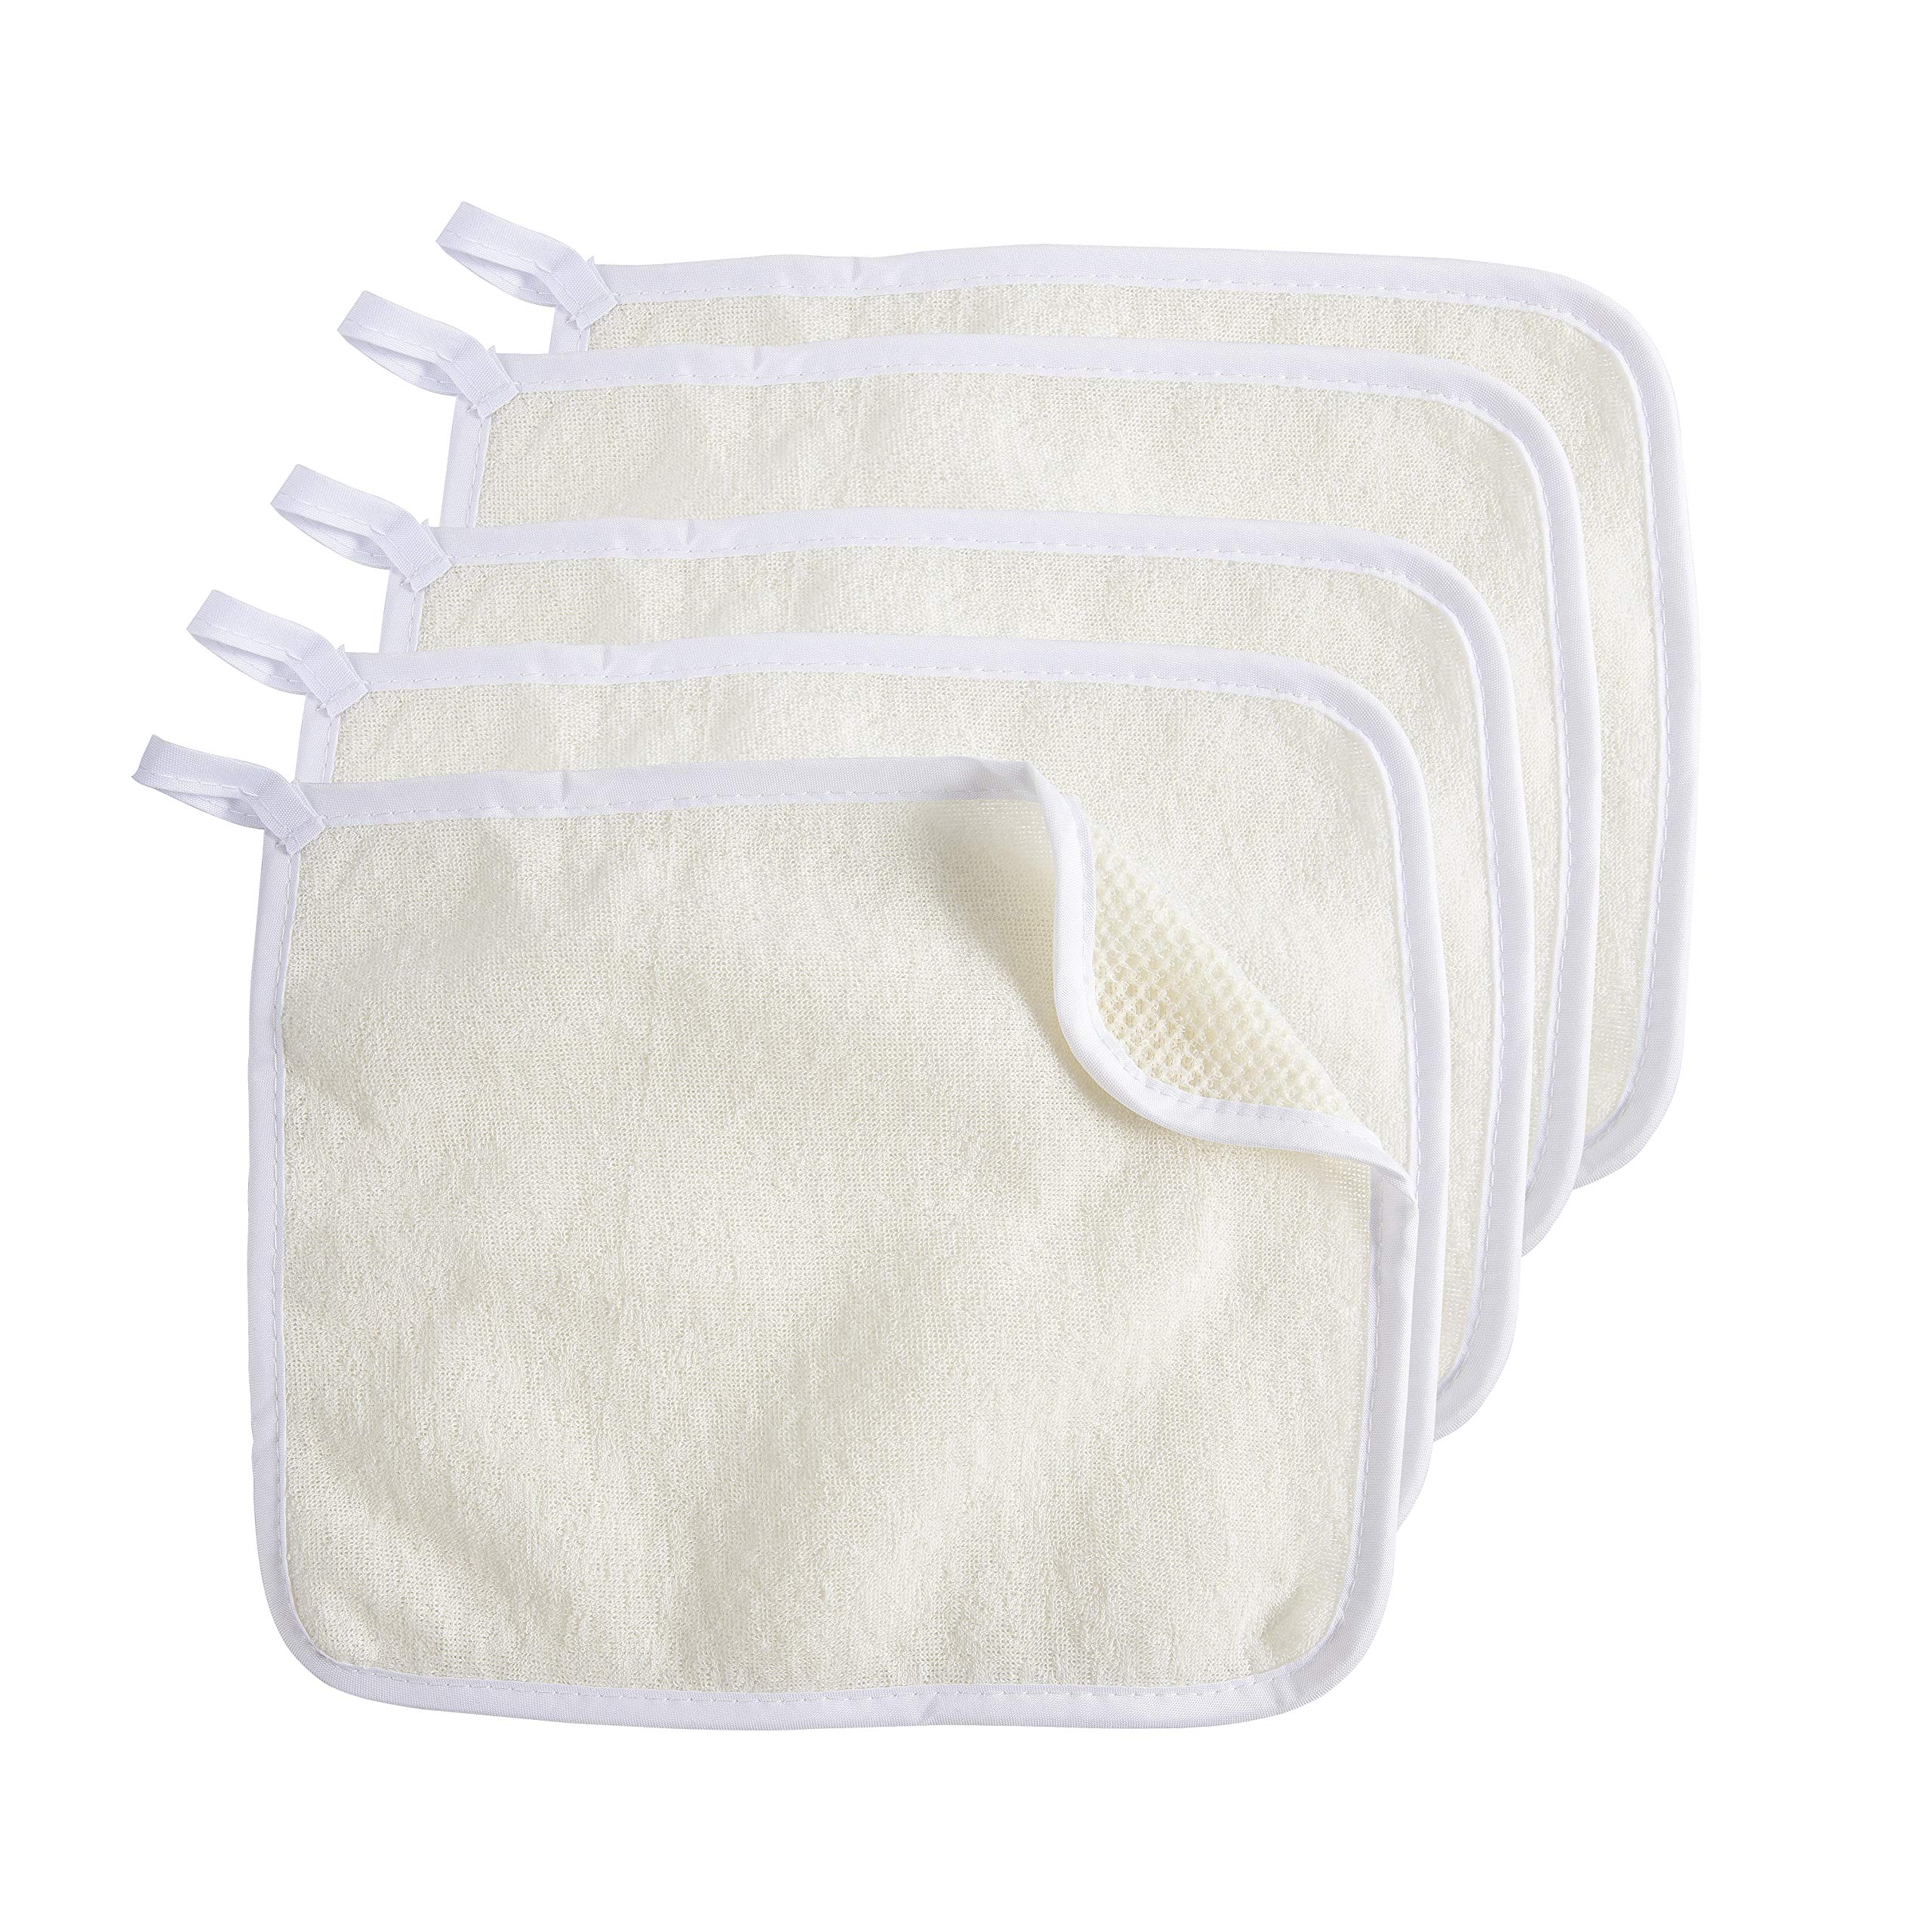 Exfoliating Face Body Wash Cloths Towel Soft Weave Bath Cloth Dual-Sided  Exfoliating Scrub Cloth Shower Wash Rags Massage Bath Cloth for Skin Care 5  Pcs